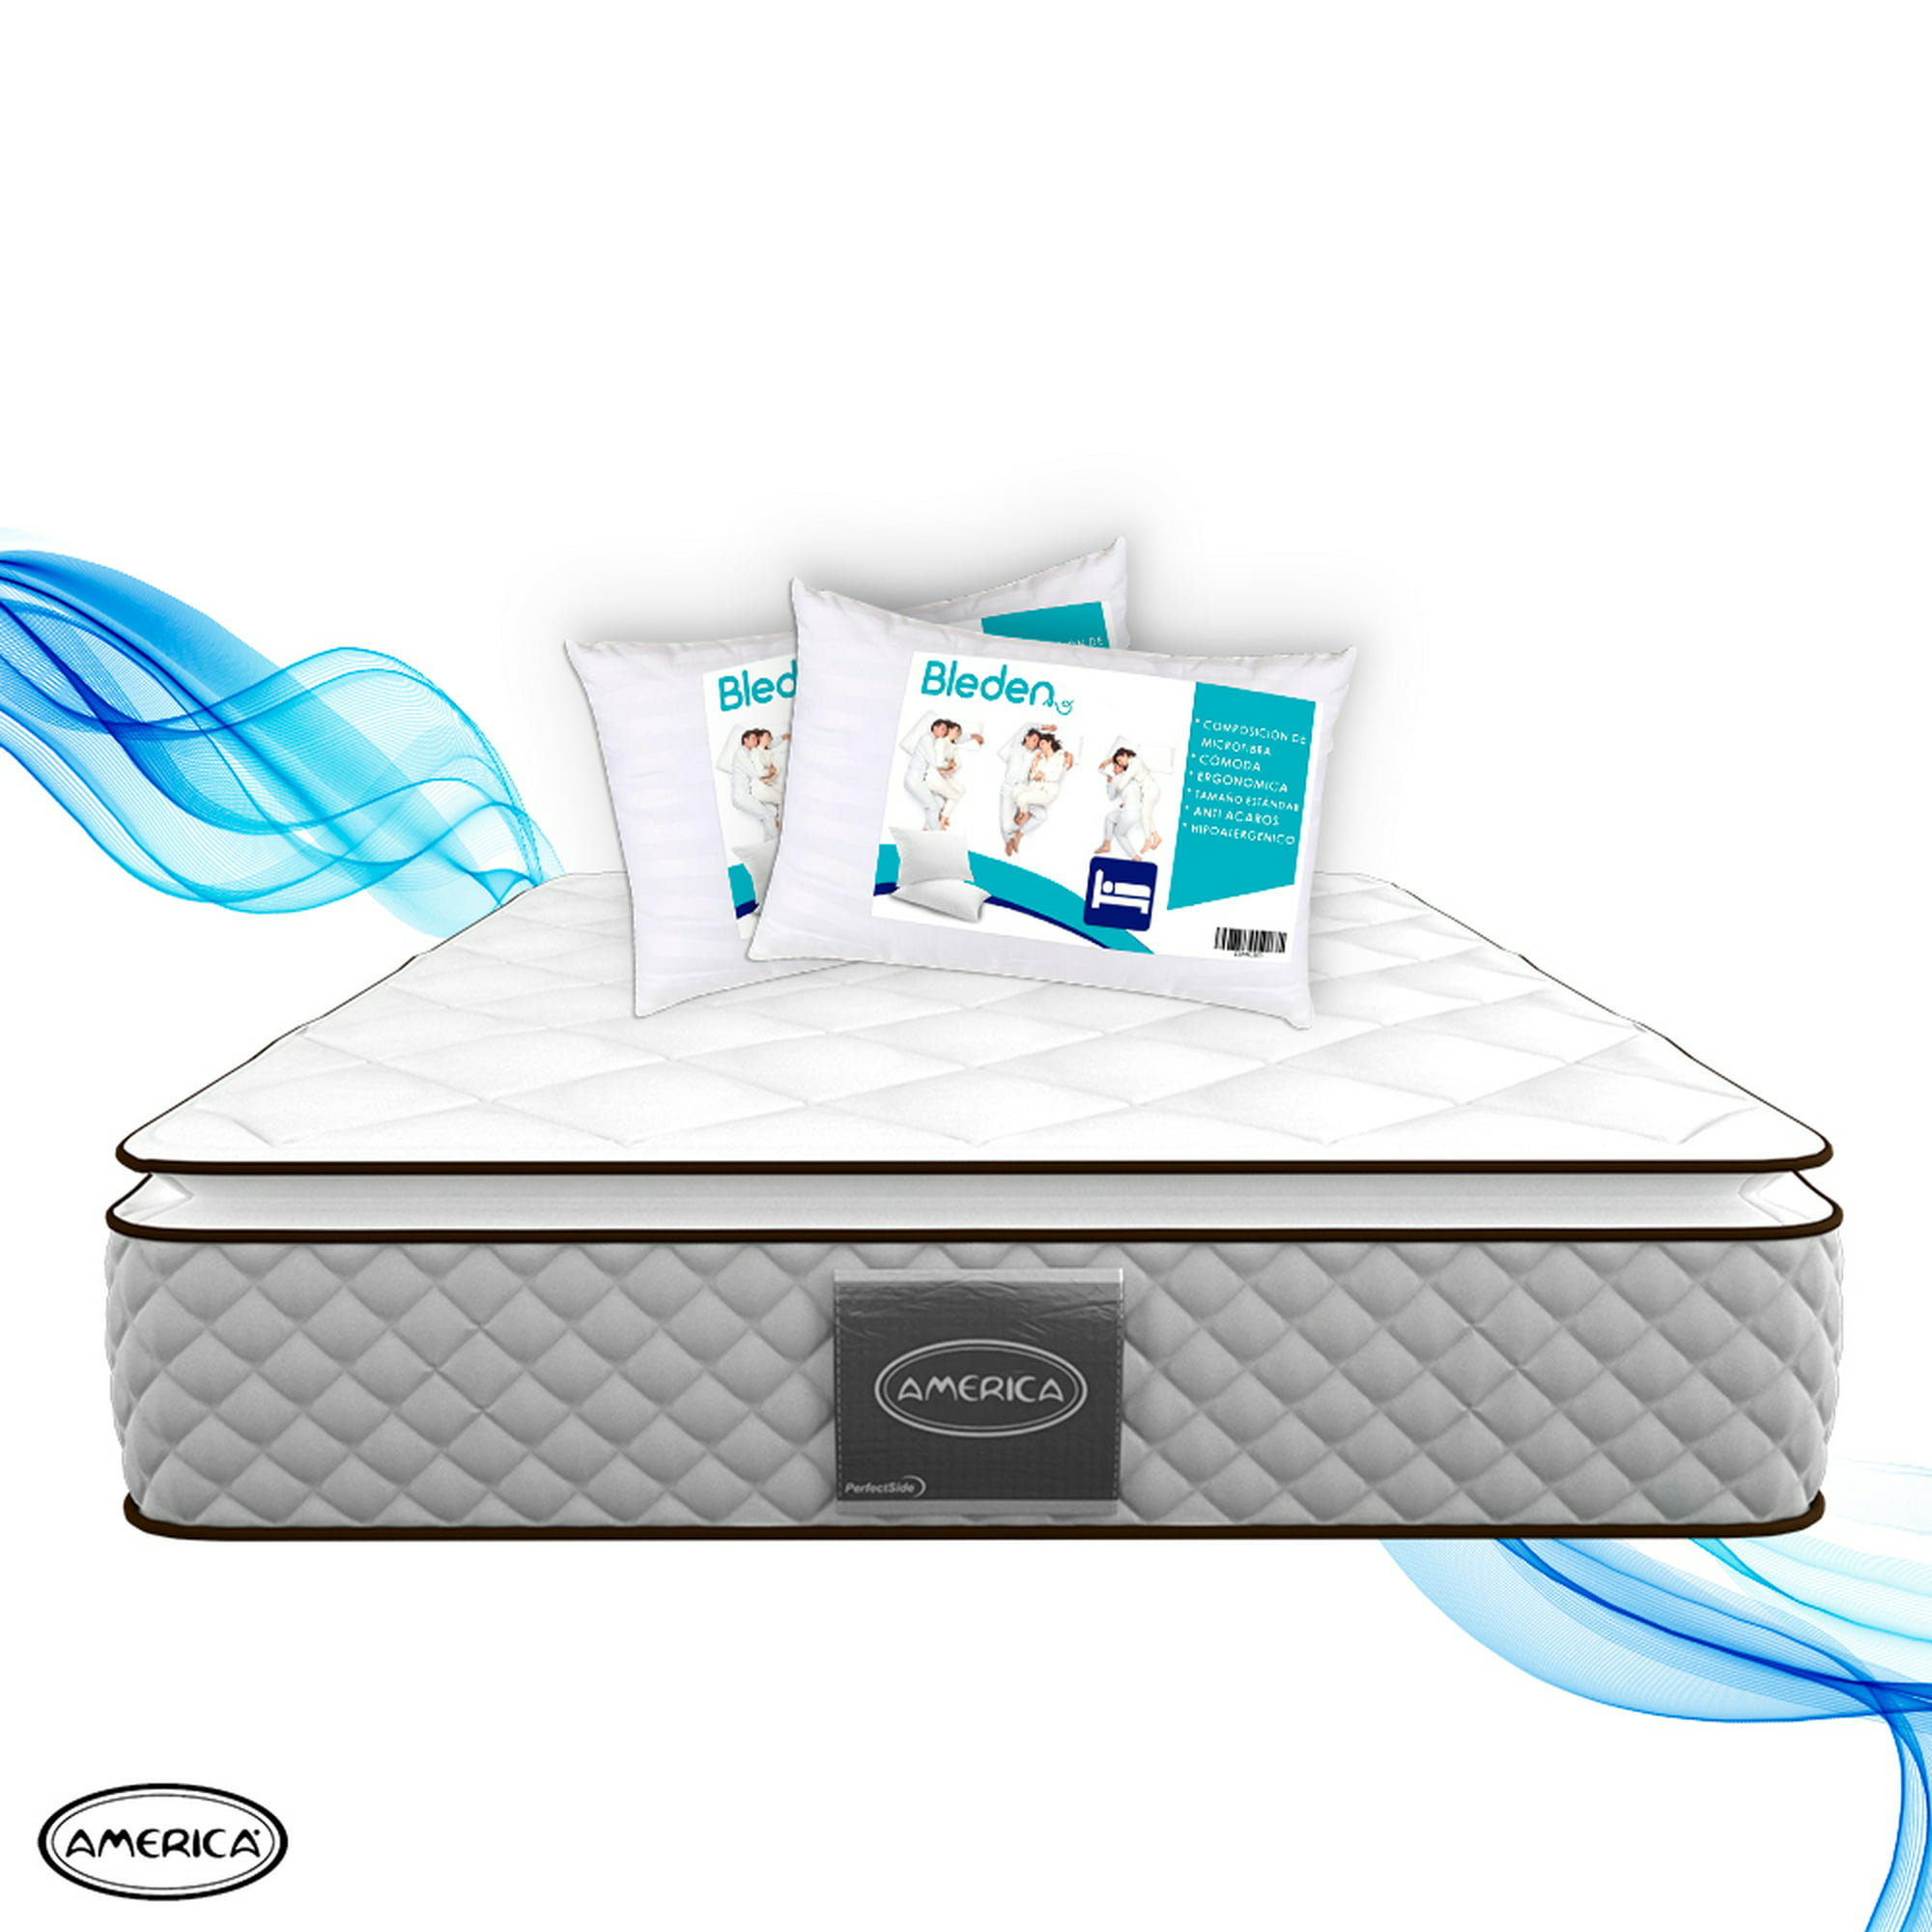 Spring Air Pack de 2 almohadas de tamaño Estandar, de Alto soporte y  firmeza con tecnología